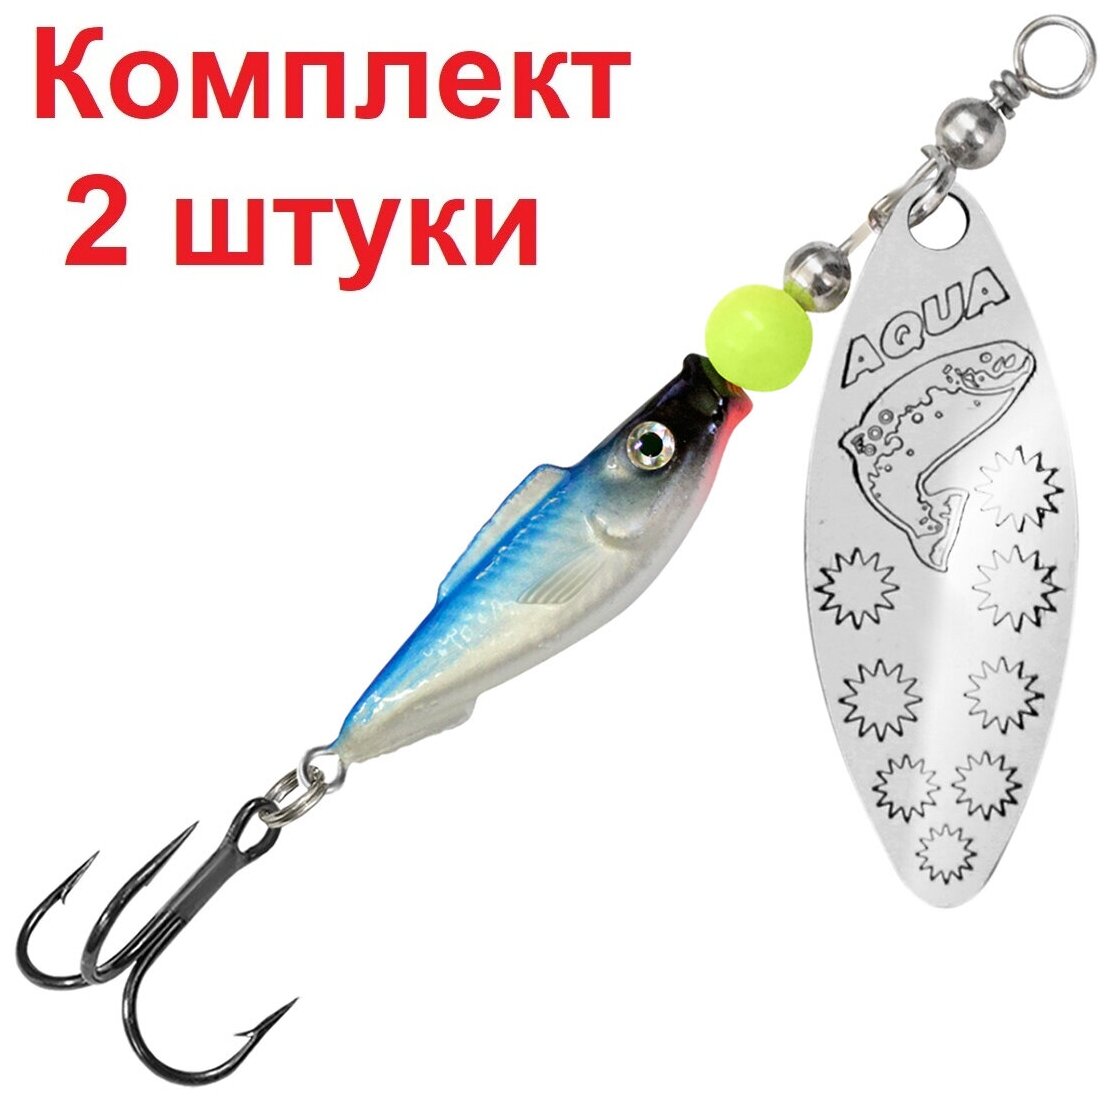 Блесна для рыбалки AQUA FISH LONG EXTRA-2 12,0g, цвет 06 (серебро), 2 штуки в комплекте